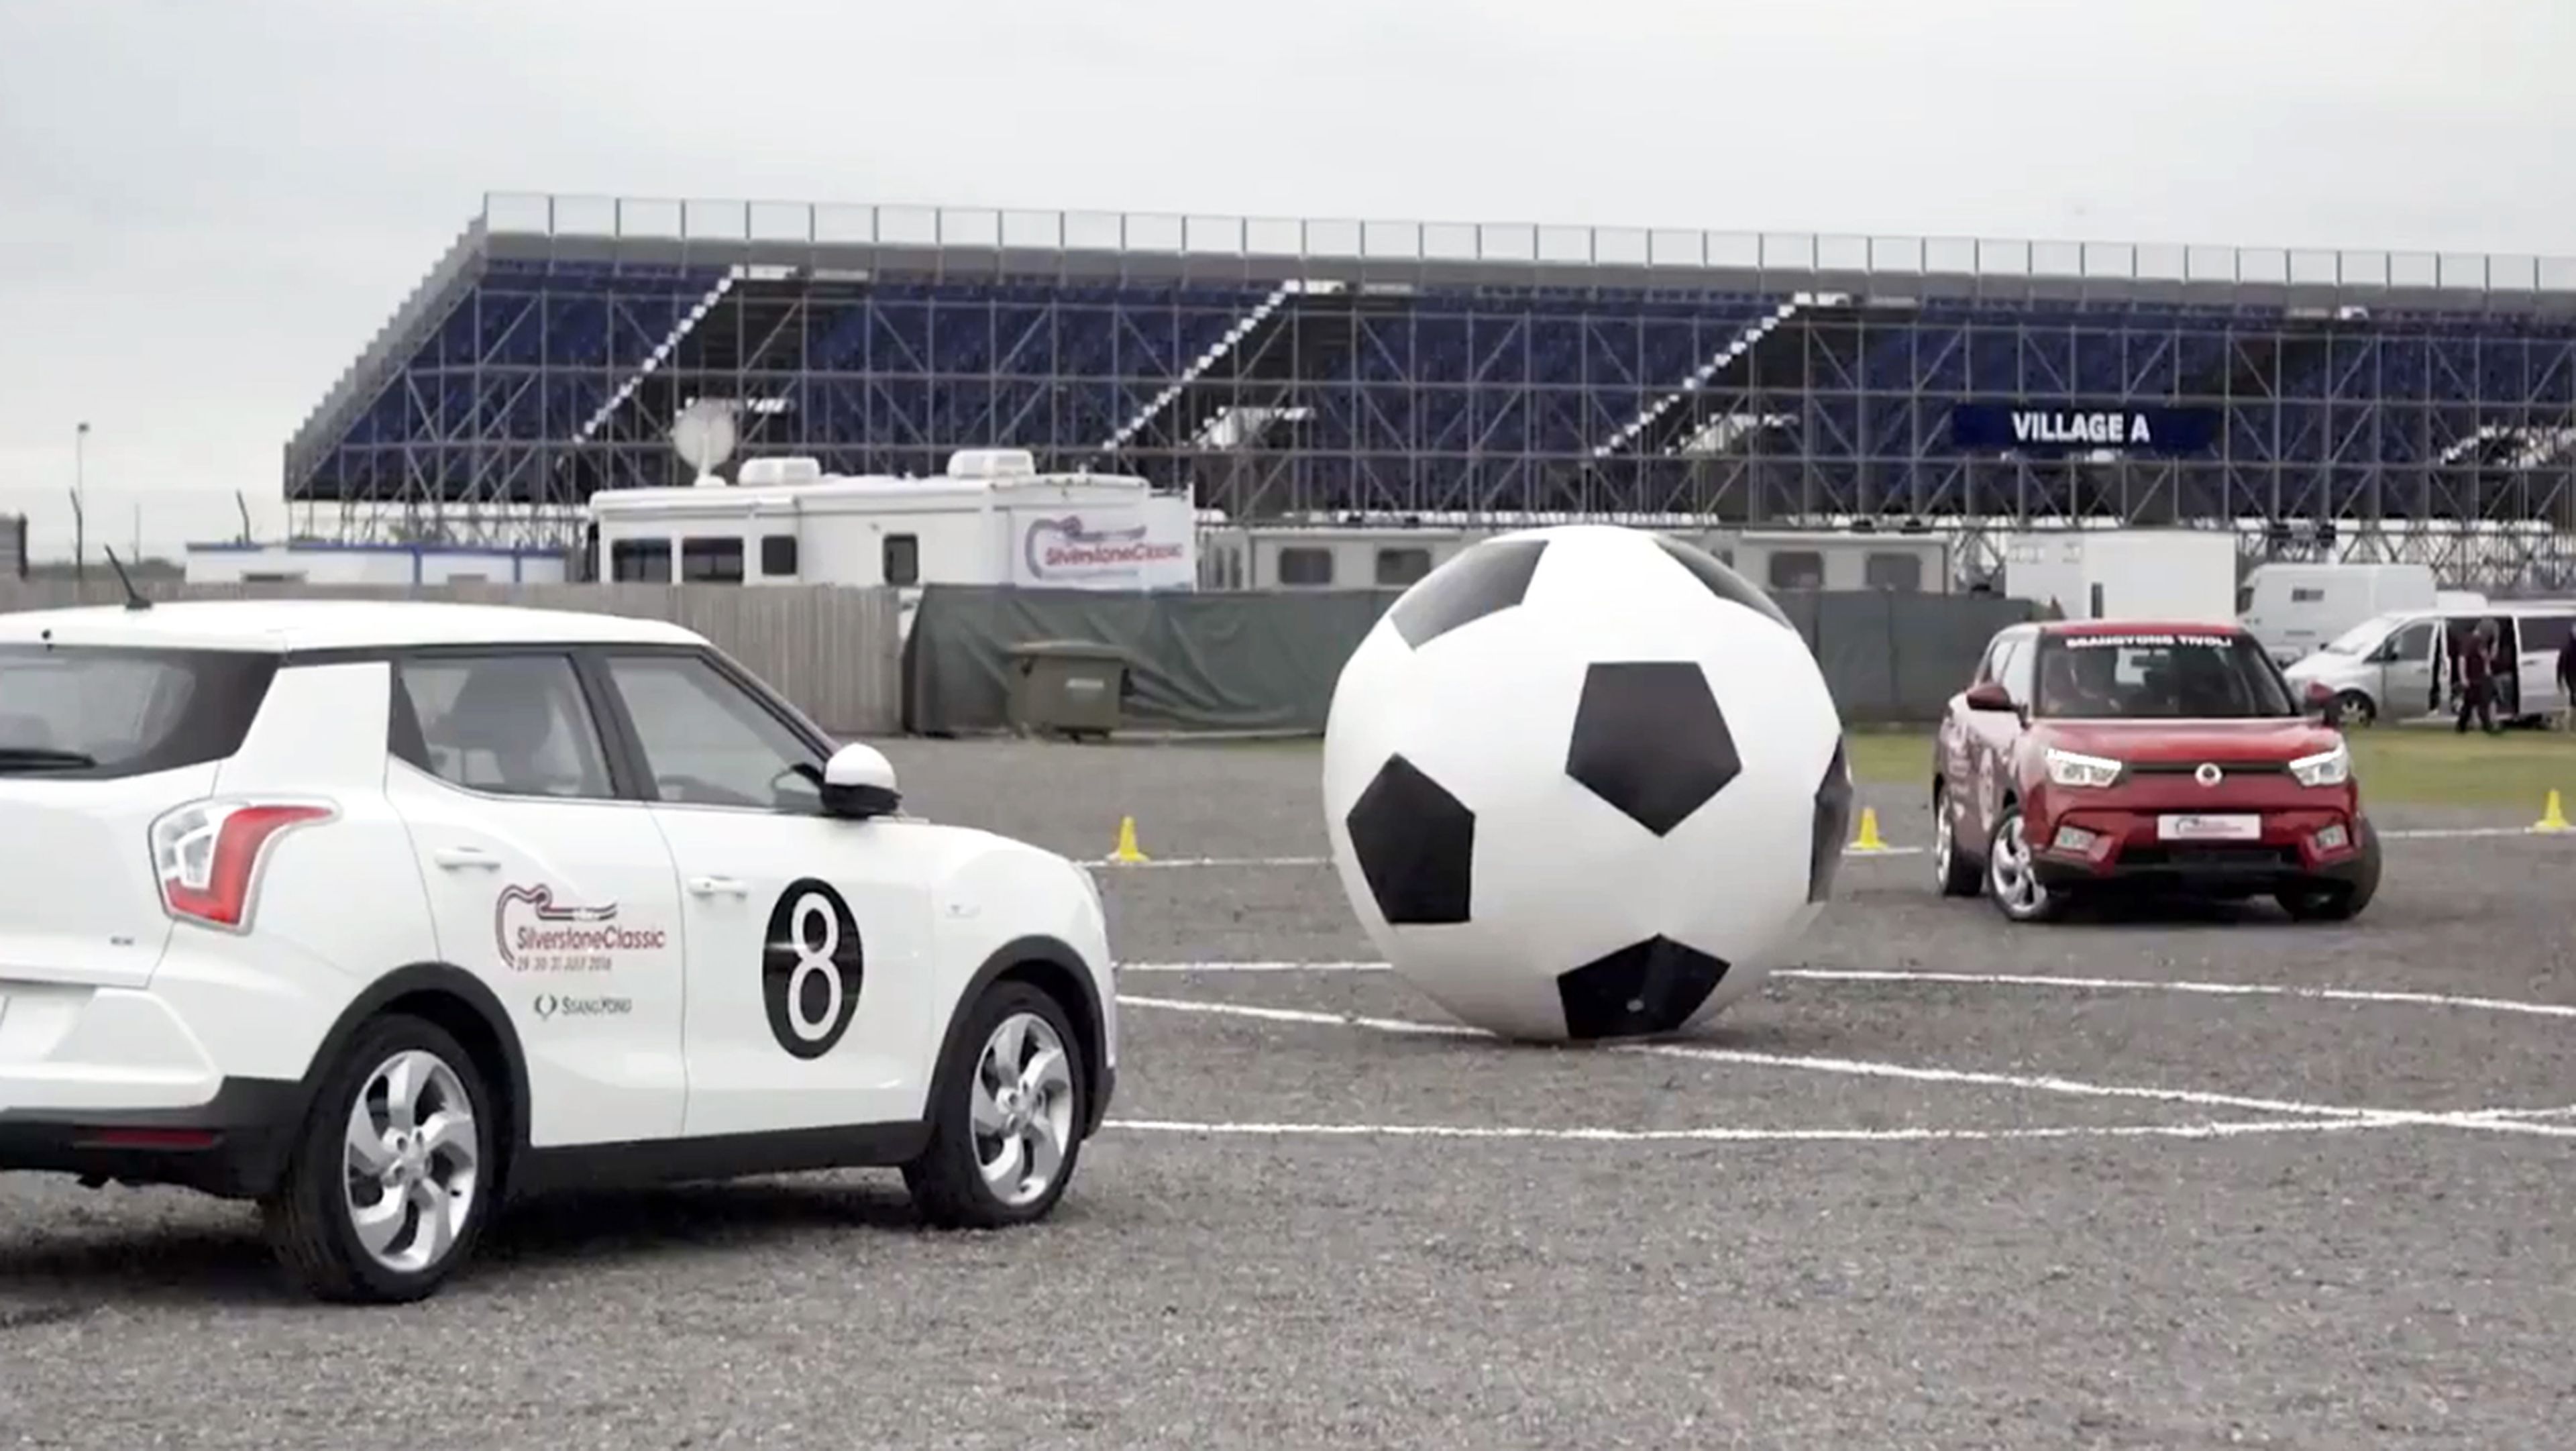 Fútbol con coches: el deporte perfecto